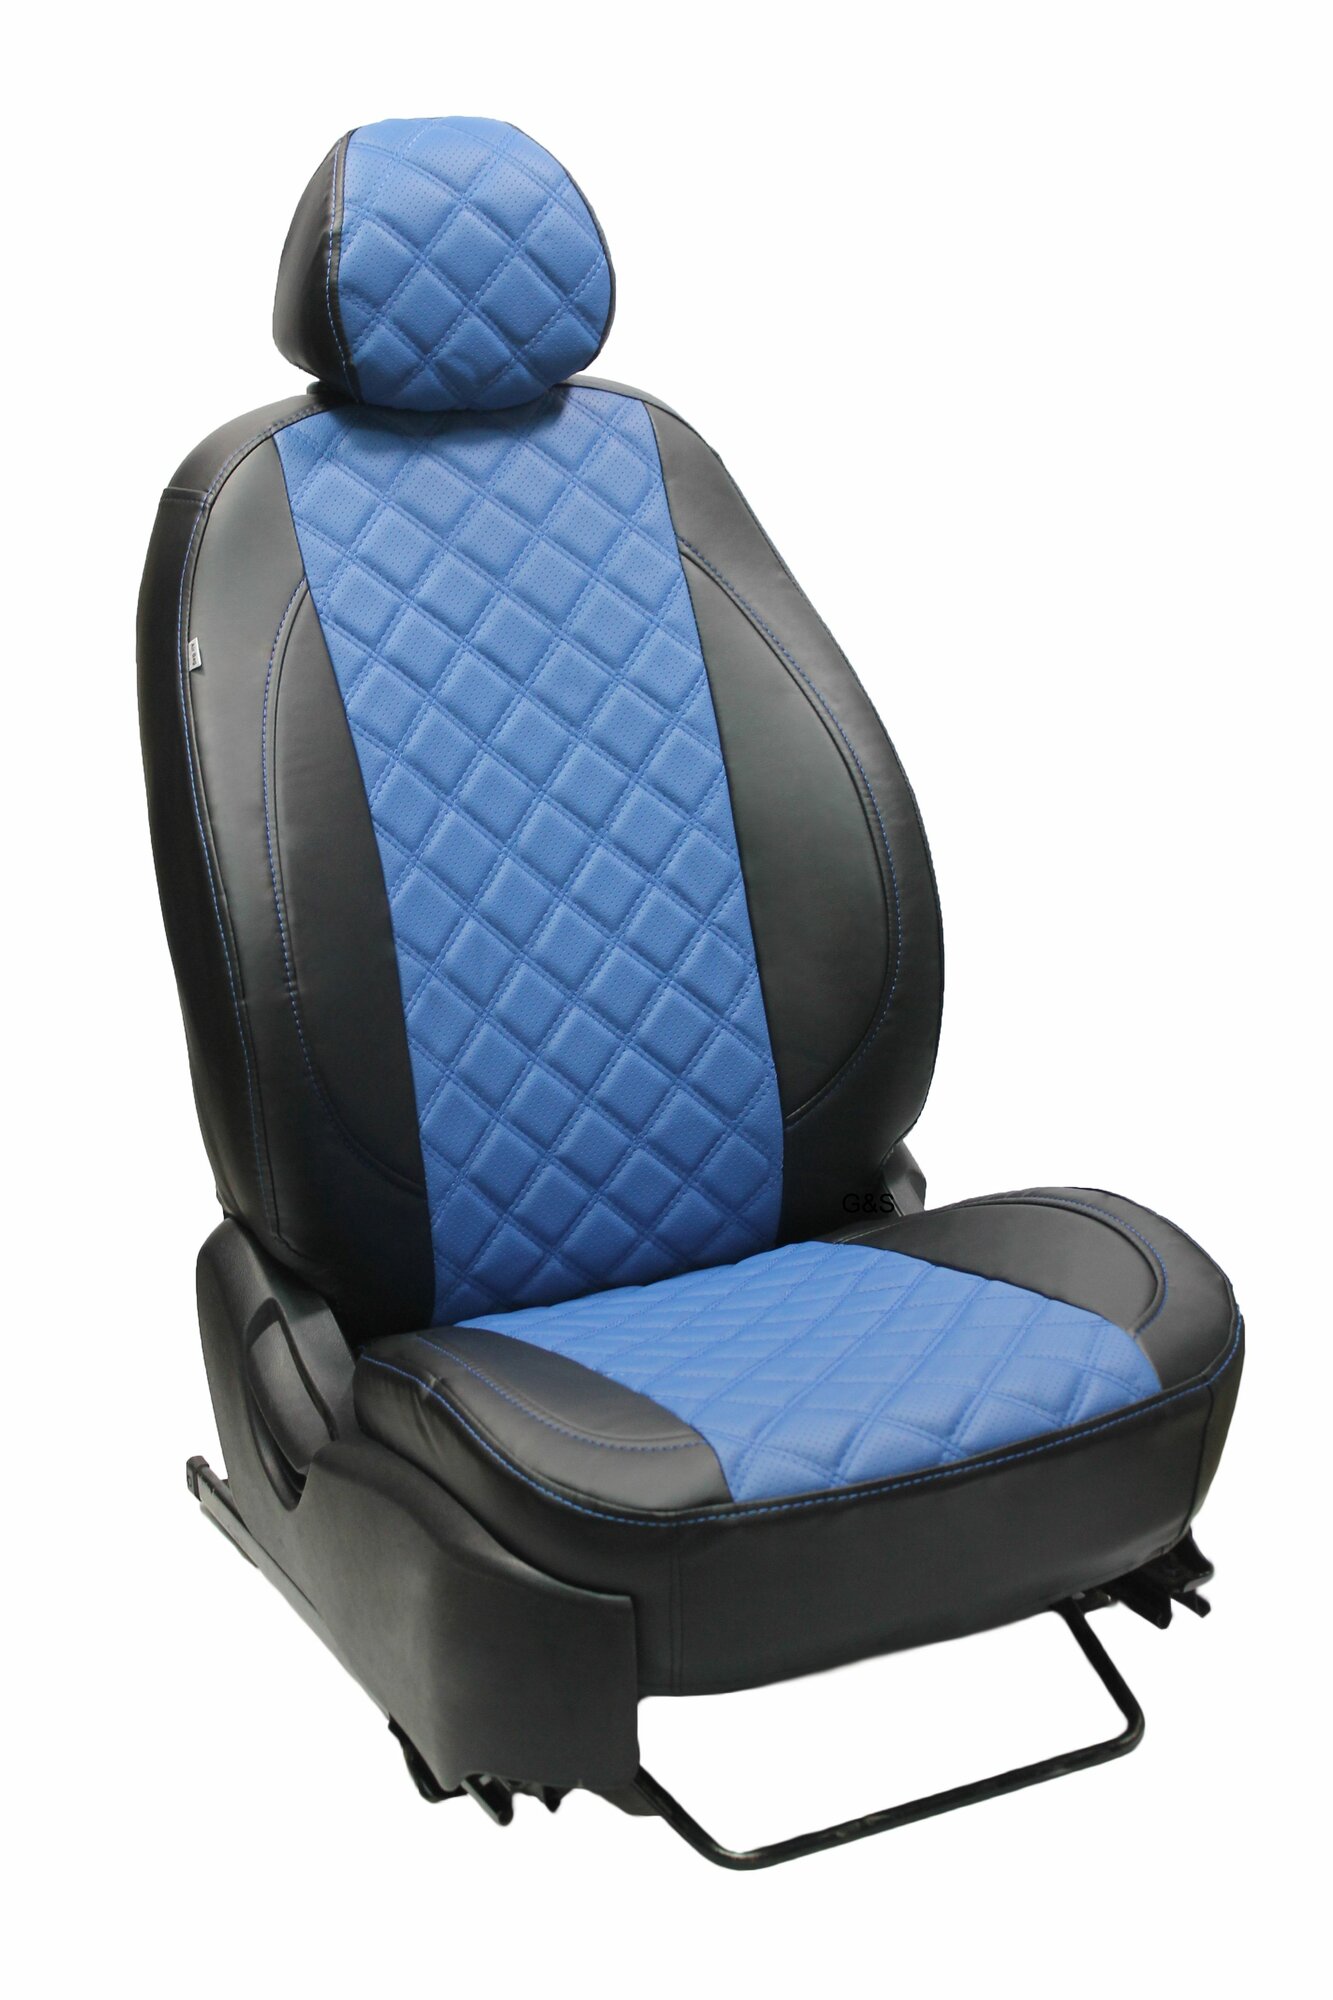 Чехлы для автомобильных сидений комплект Premium на MITSUBISHI ASX (2010-н. в.) авточехлы модельные экокожа, черно-синий ромб (Митсубиши аэсикс)